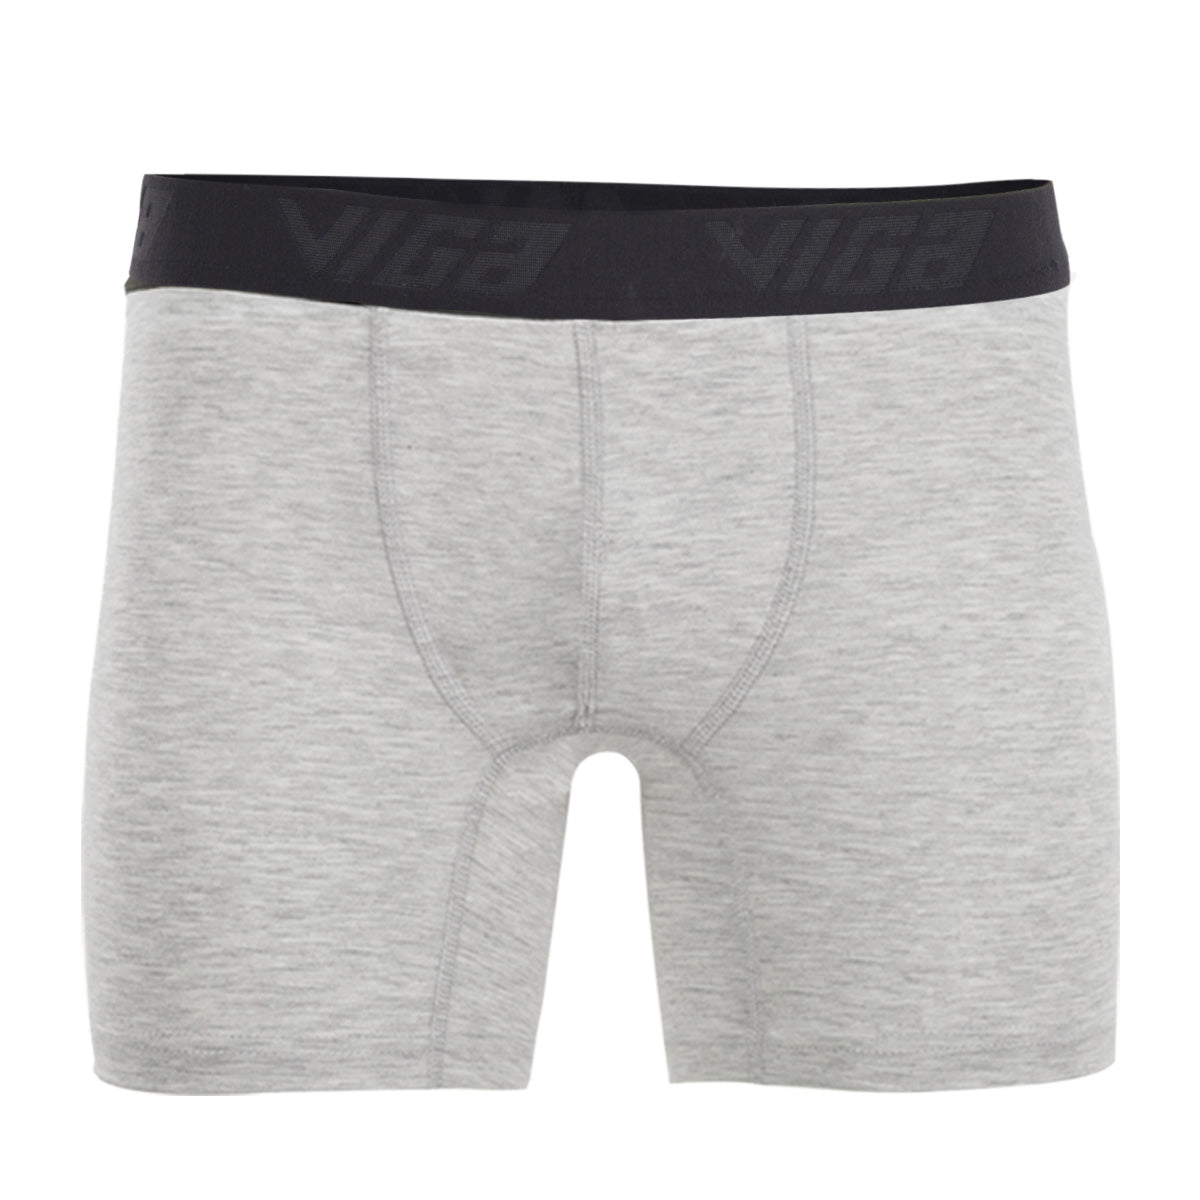 Viga boxer shorts - Grey